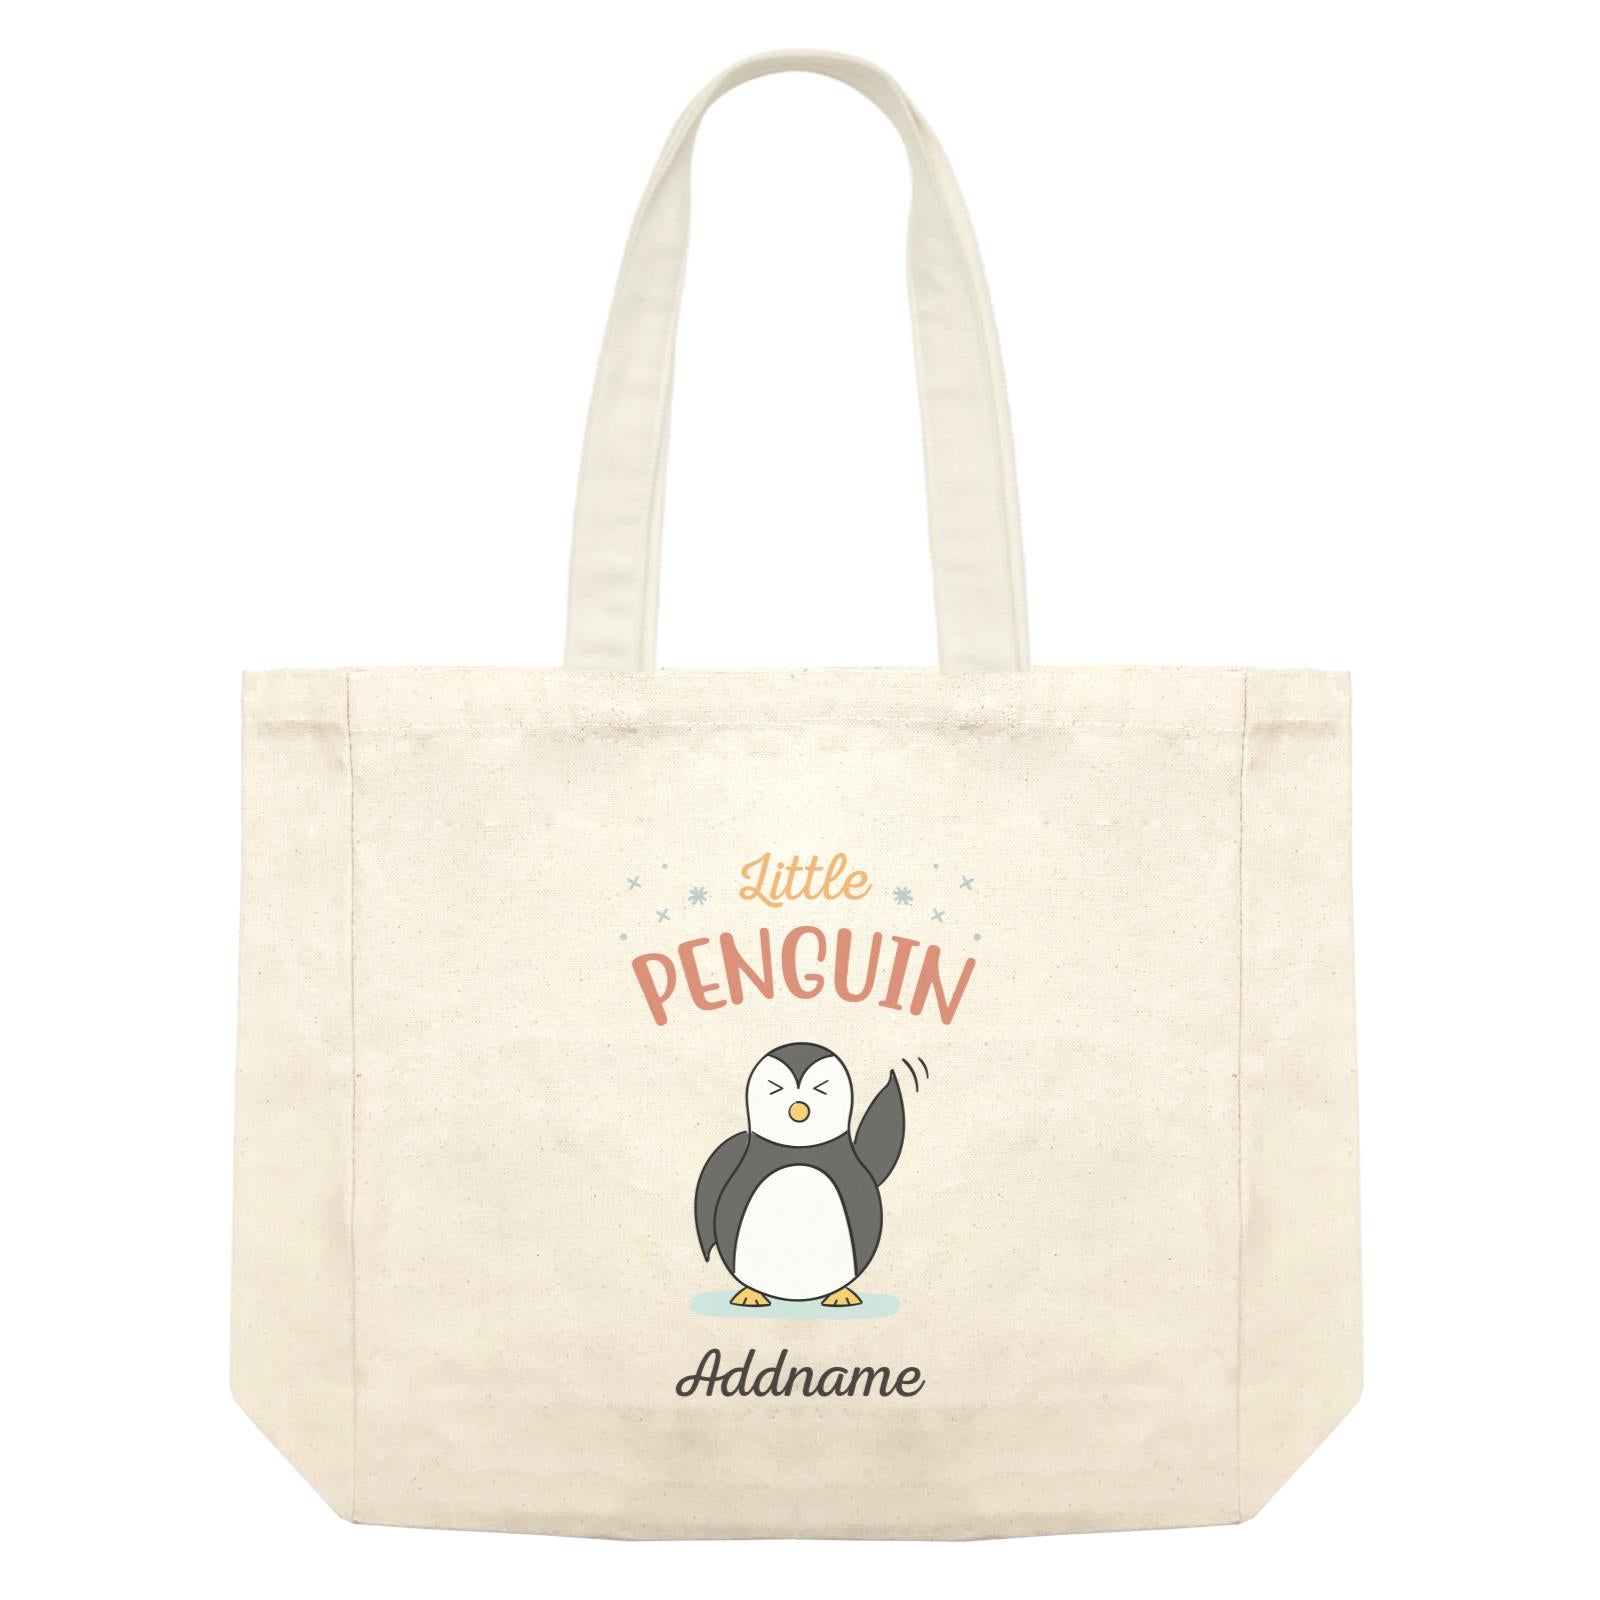 Penguin Family Little Penguin Happy Waving Hand Addname Shopping Bag